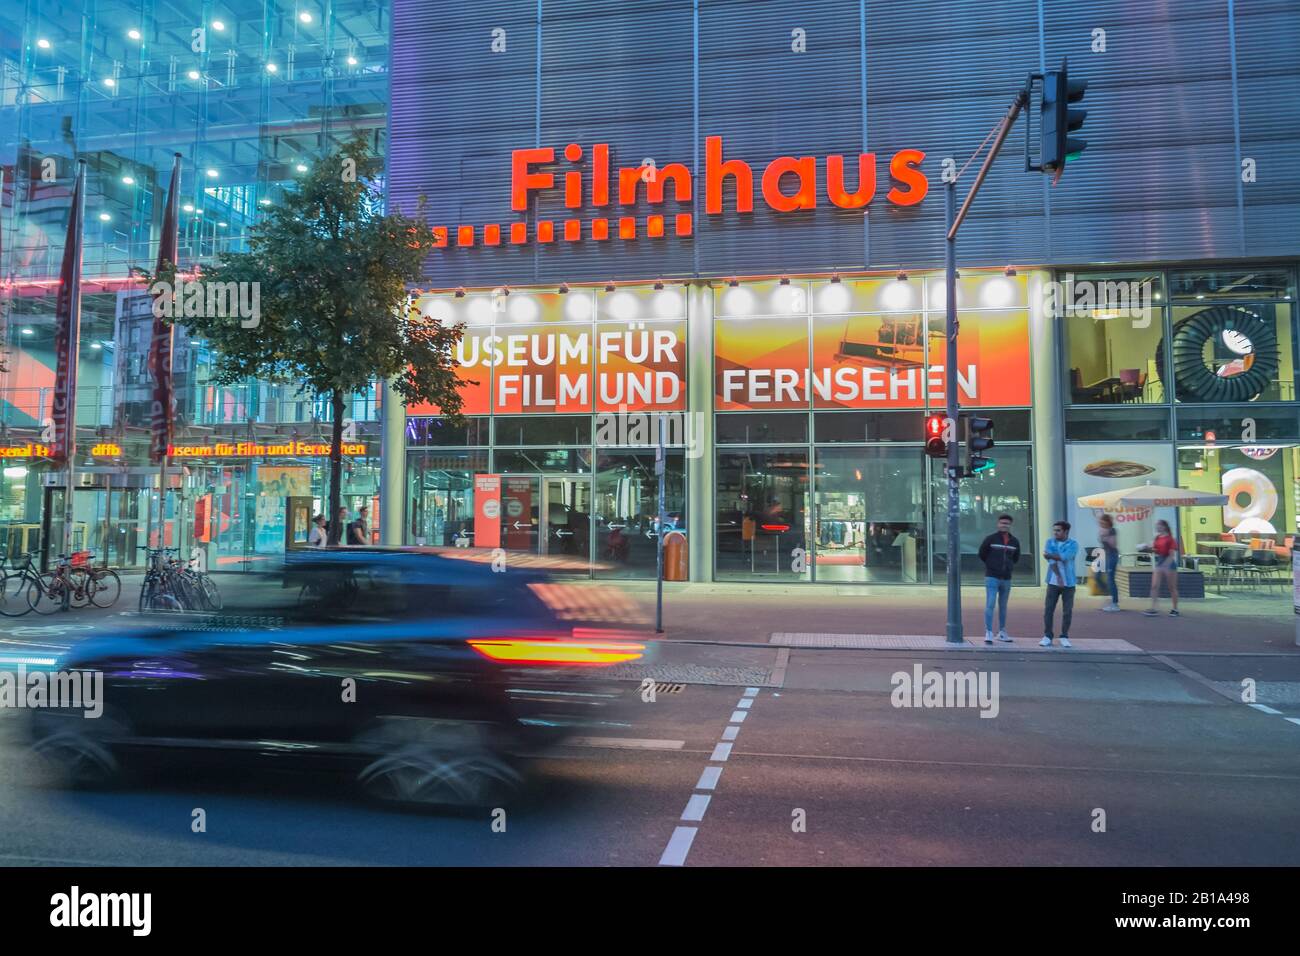 berlin film museum, filmhaus, museum fuer film und fernsehen Stock Photo